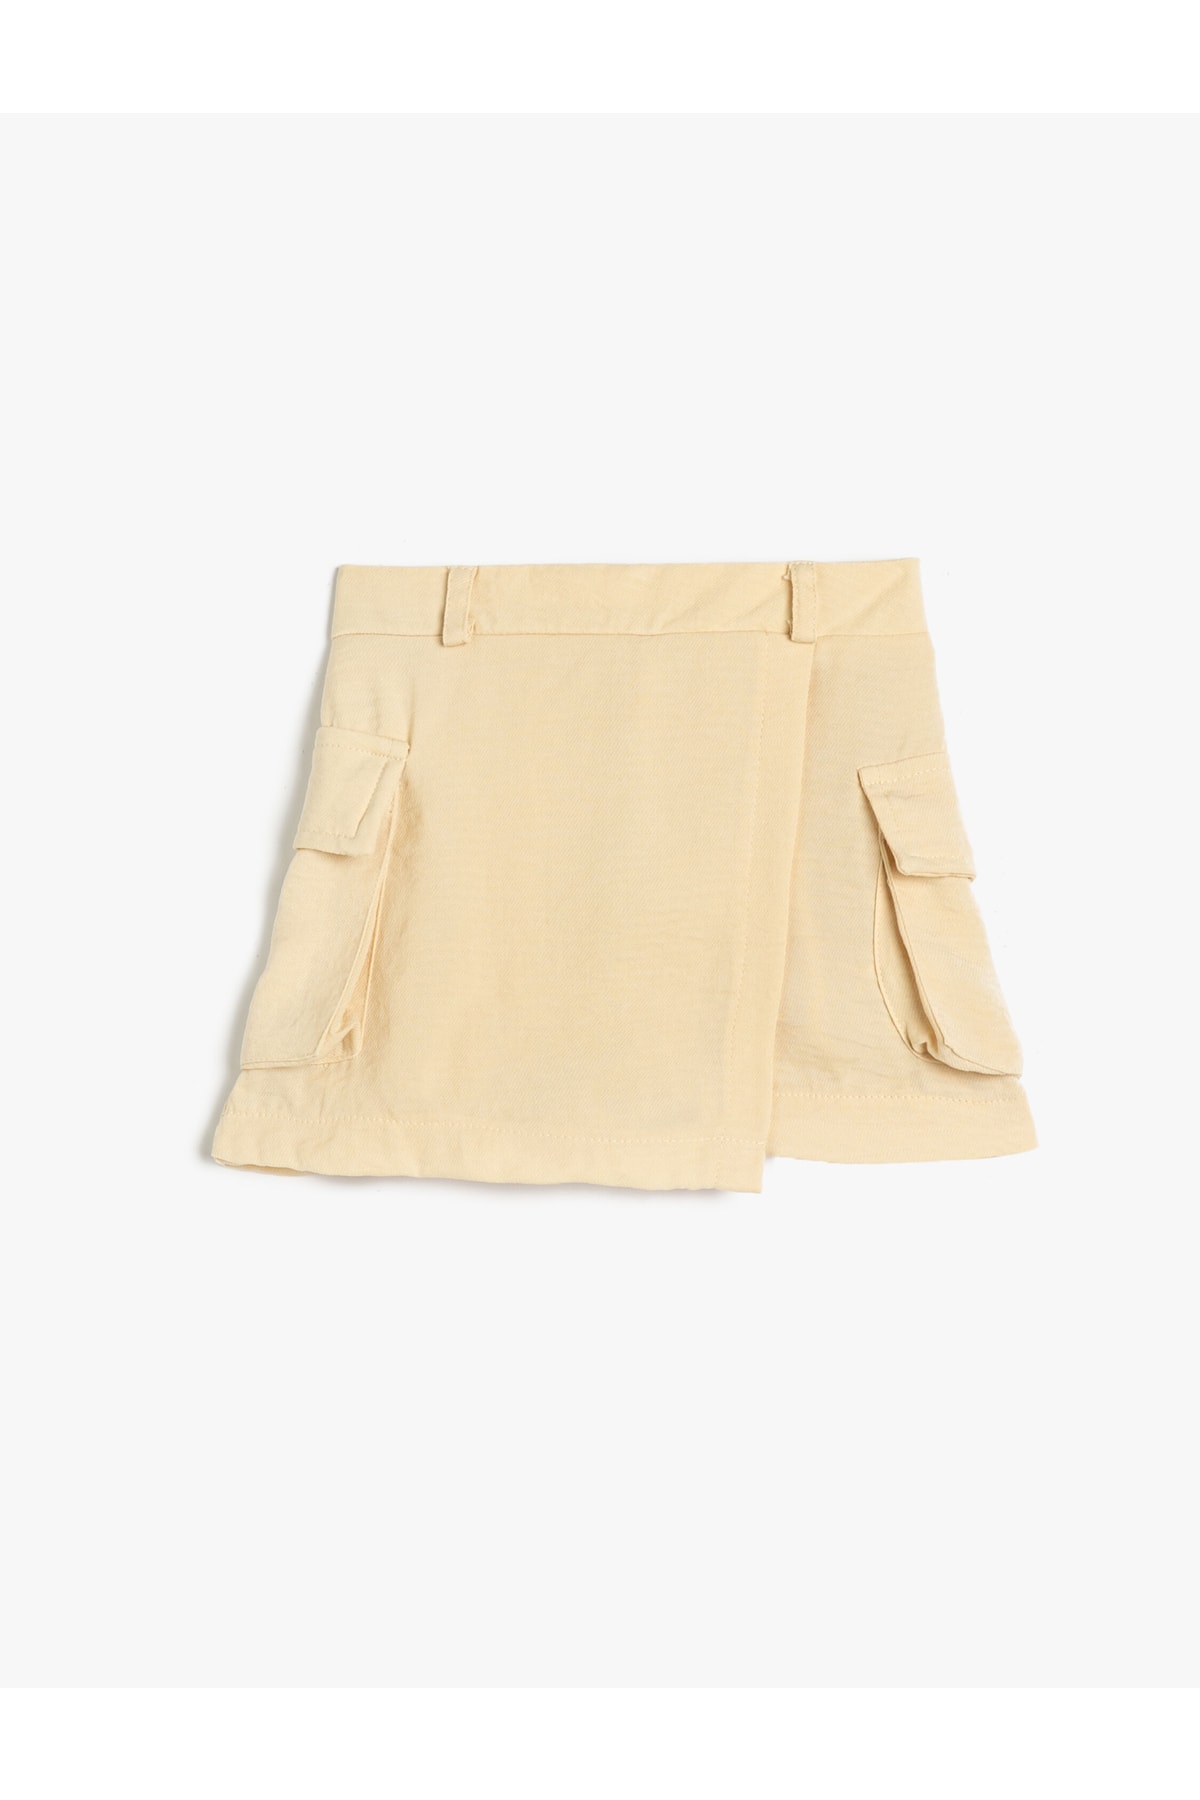 Levně Koton Shorts, Skirt with Pocket. Elastic Waist.